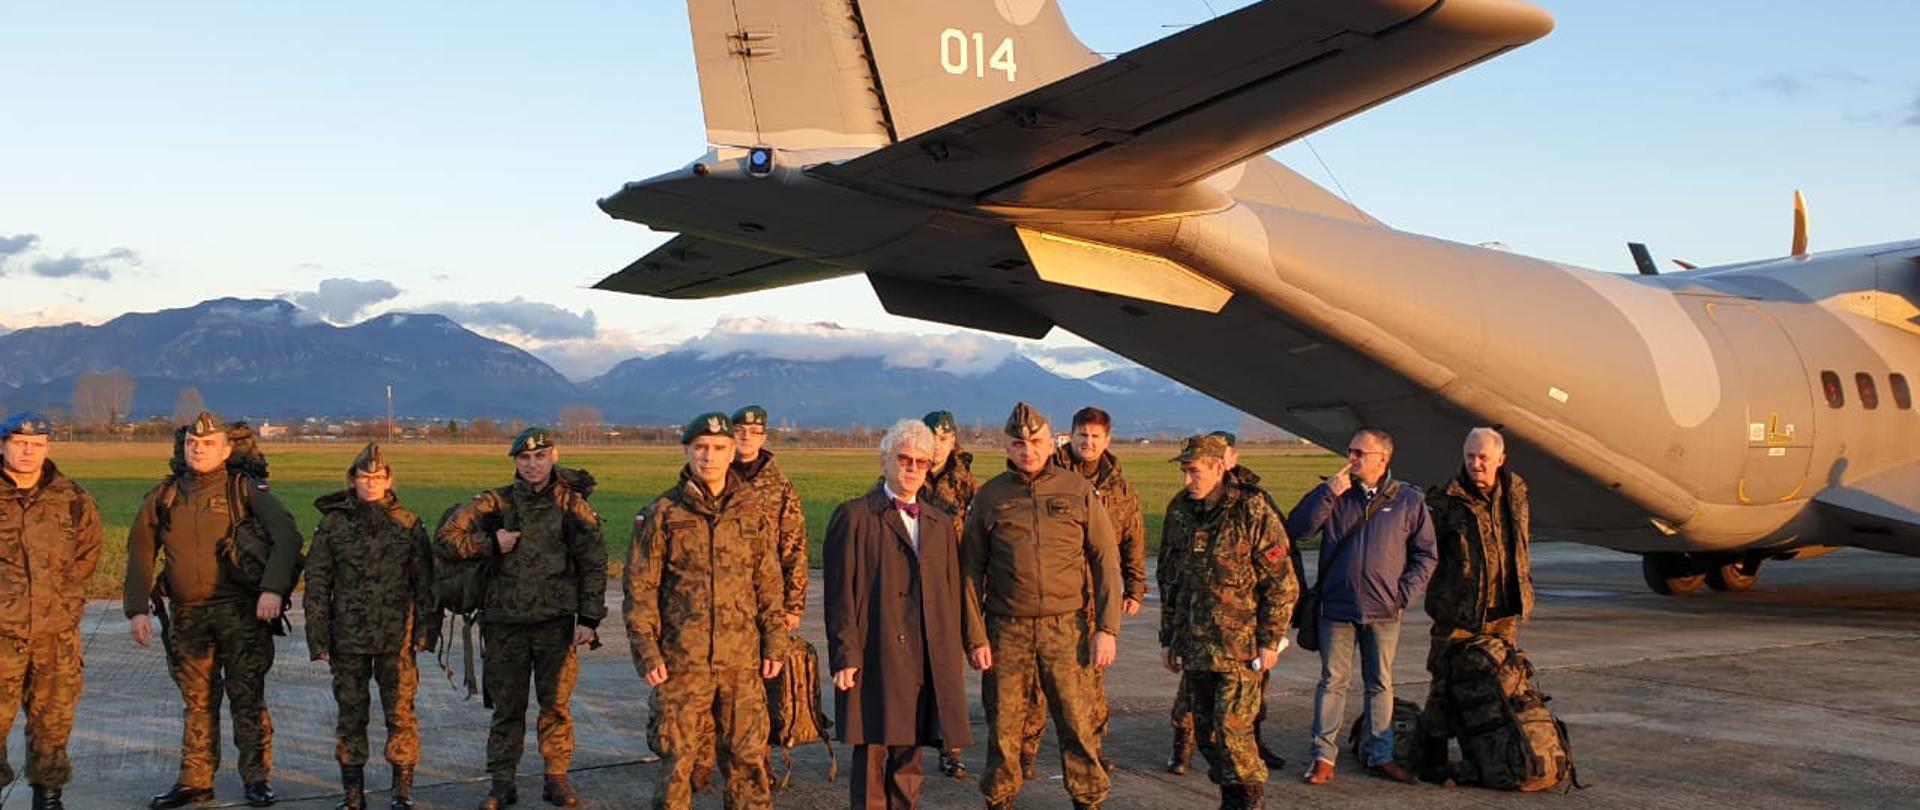 W dniu 7 grudnia br. na lotnisku Rinas w Tiranie wylądował polski samolot z 11 – osobowym zespołem inżynierów wojskowych.